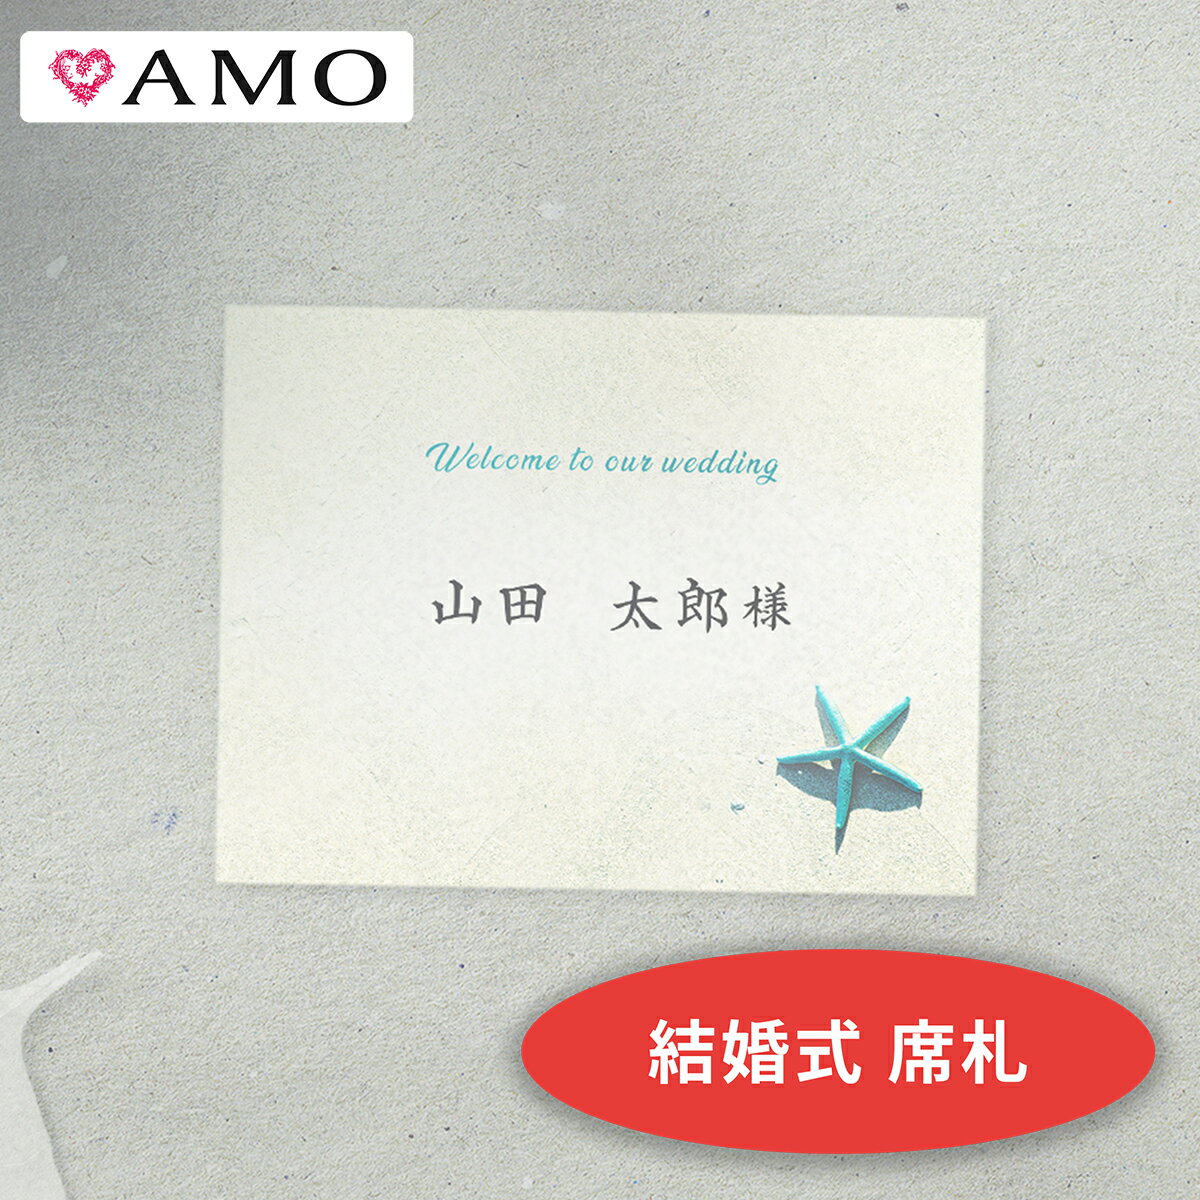 AMO 結婚式 席札 手作りキット ヒトデビーチ インクジェット対応 【30部までメール便可】